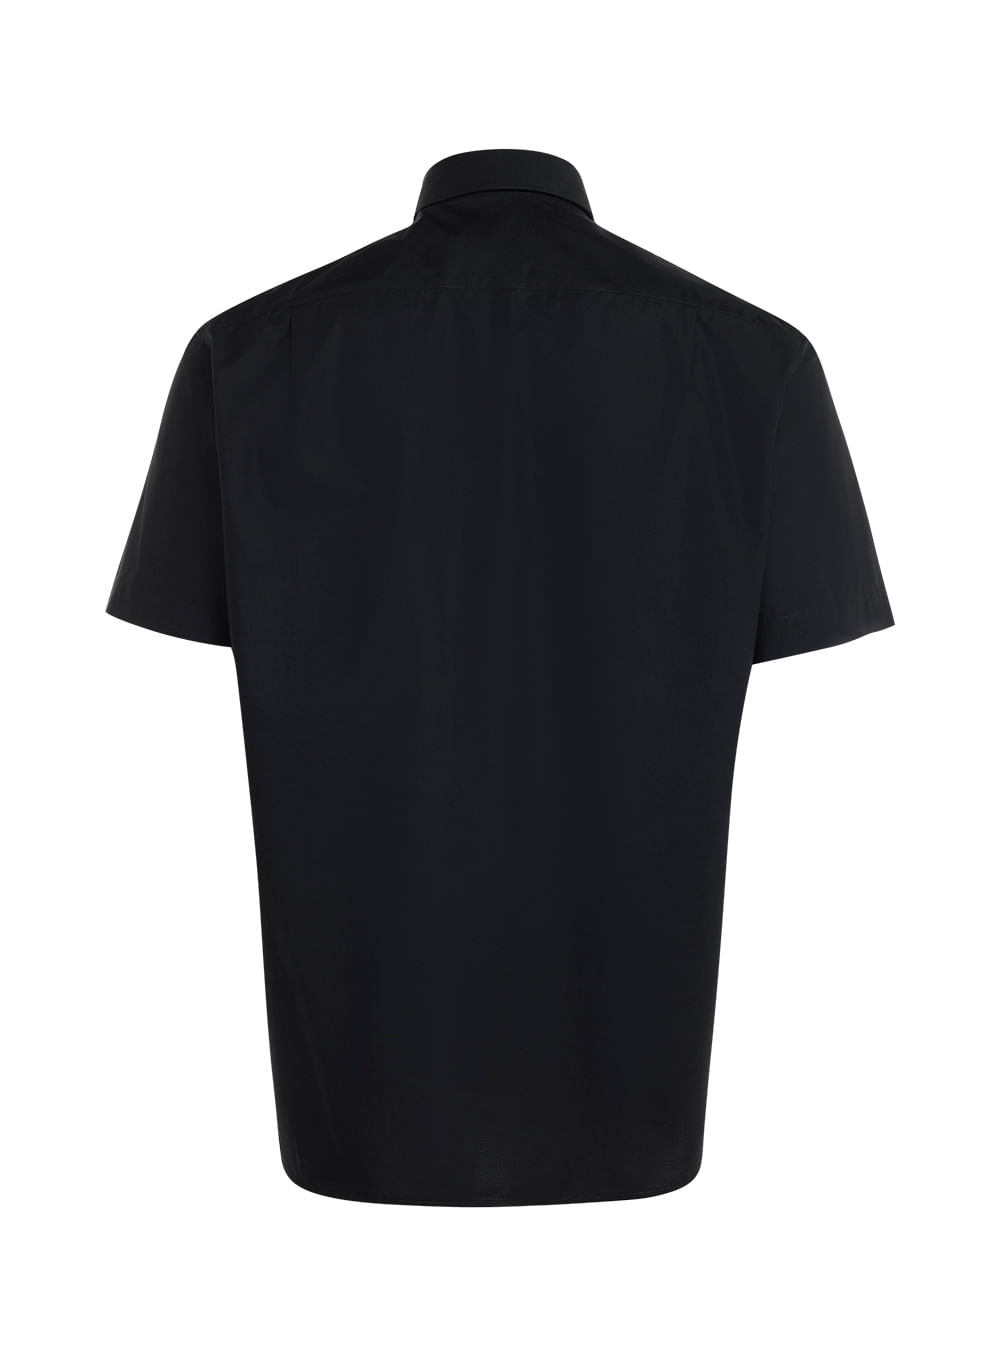 Camisa Polo Comfort - 100% Algodão